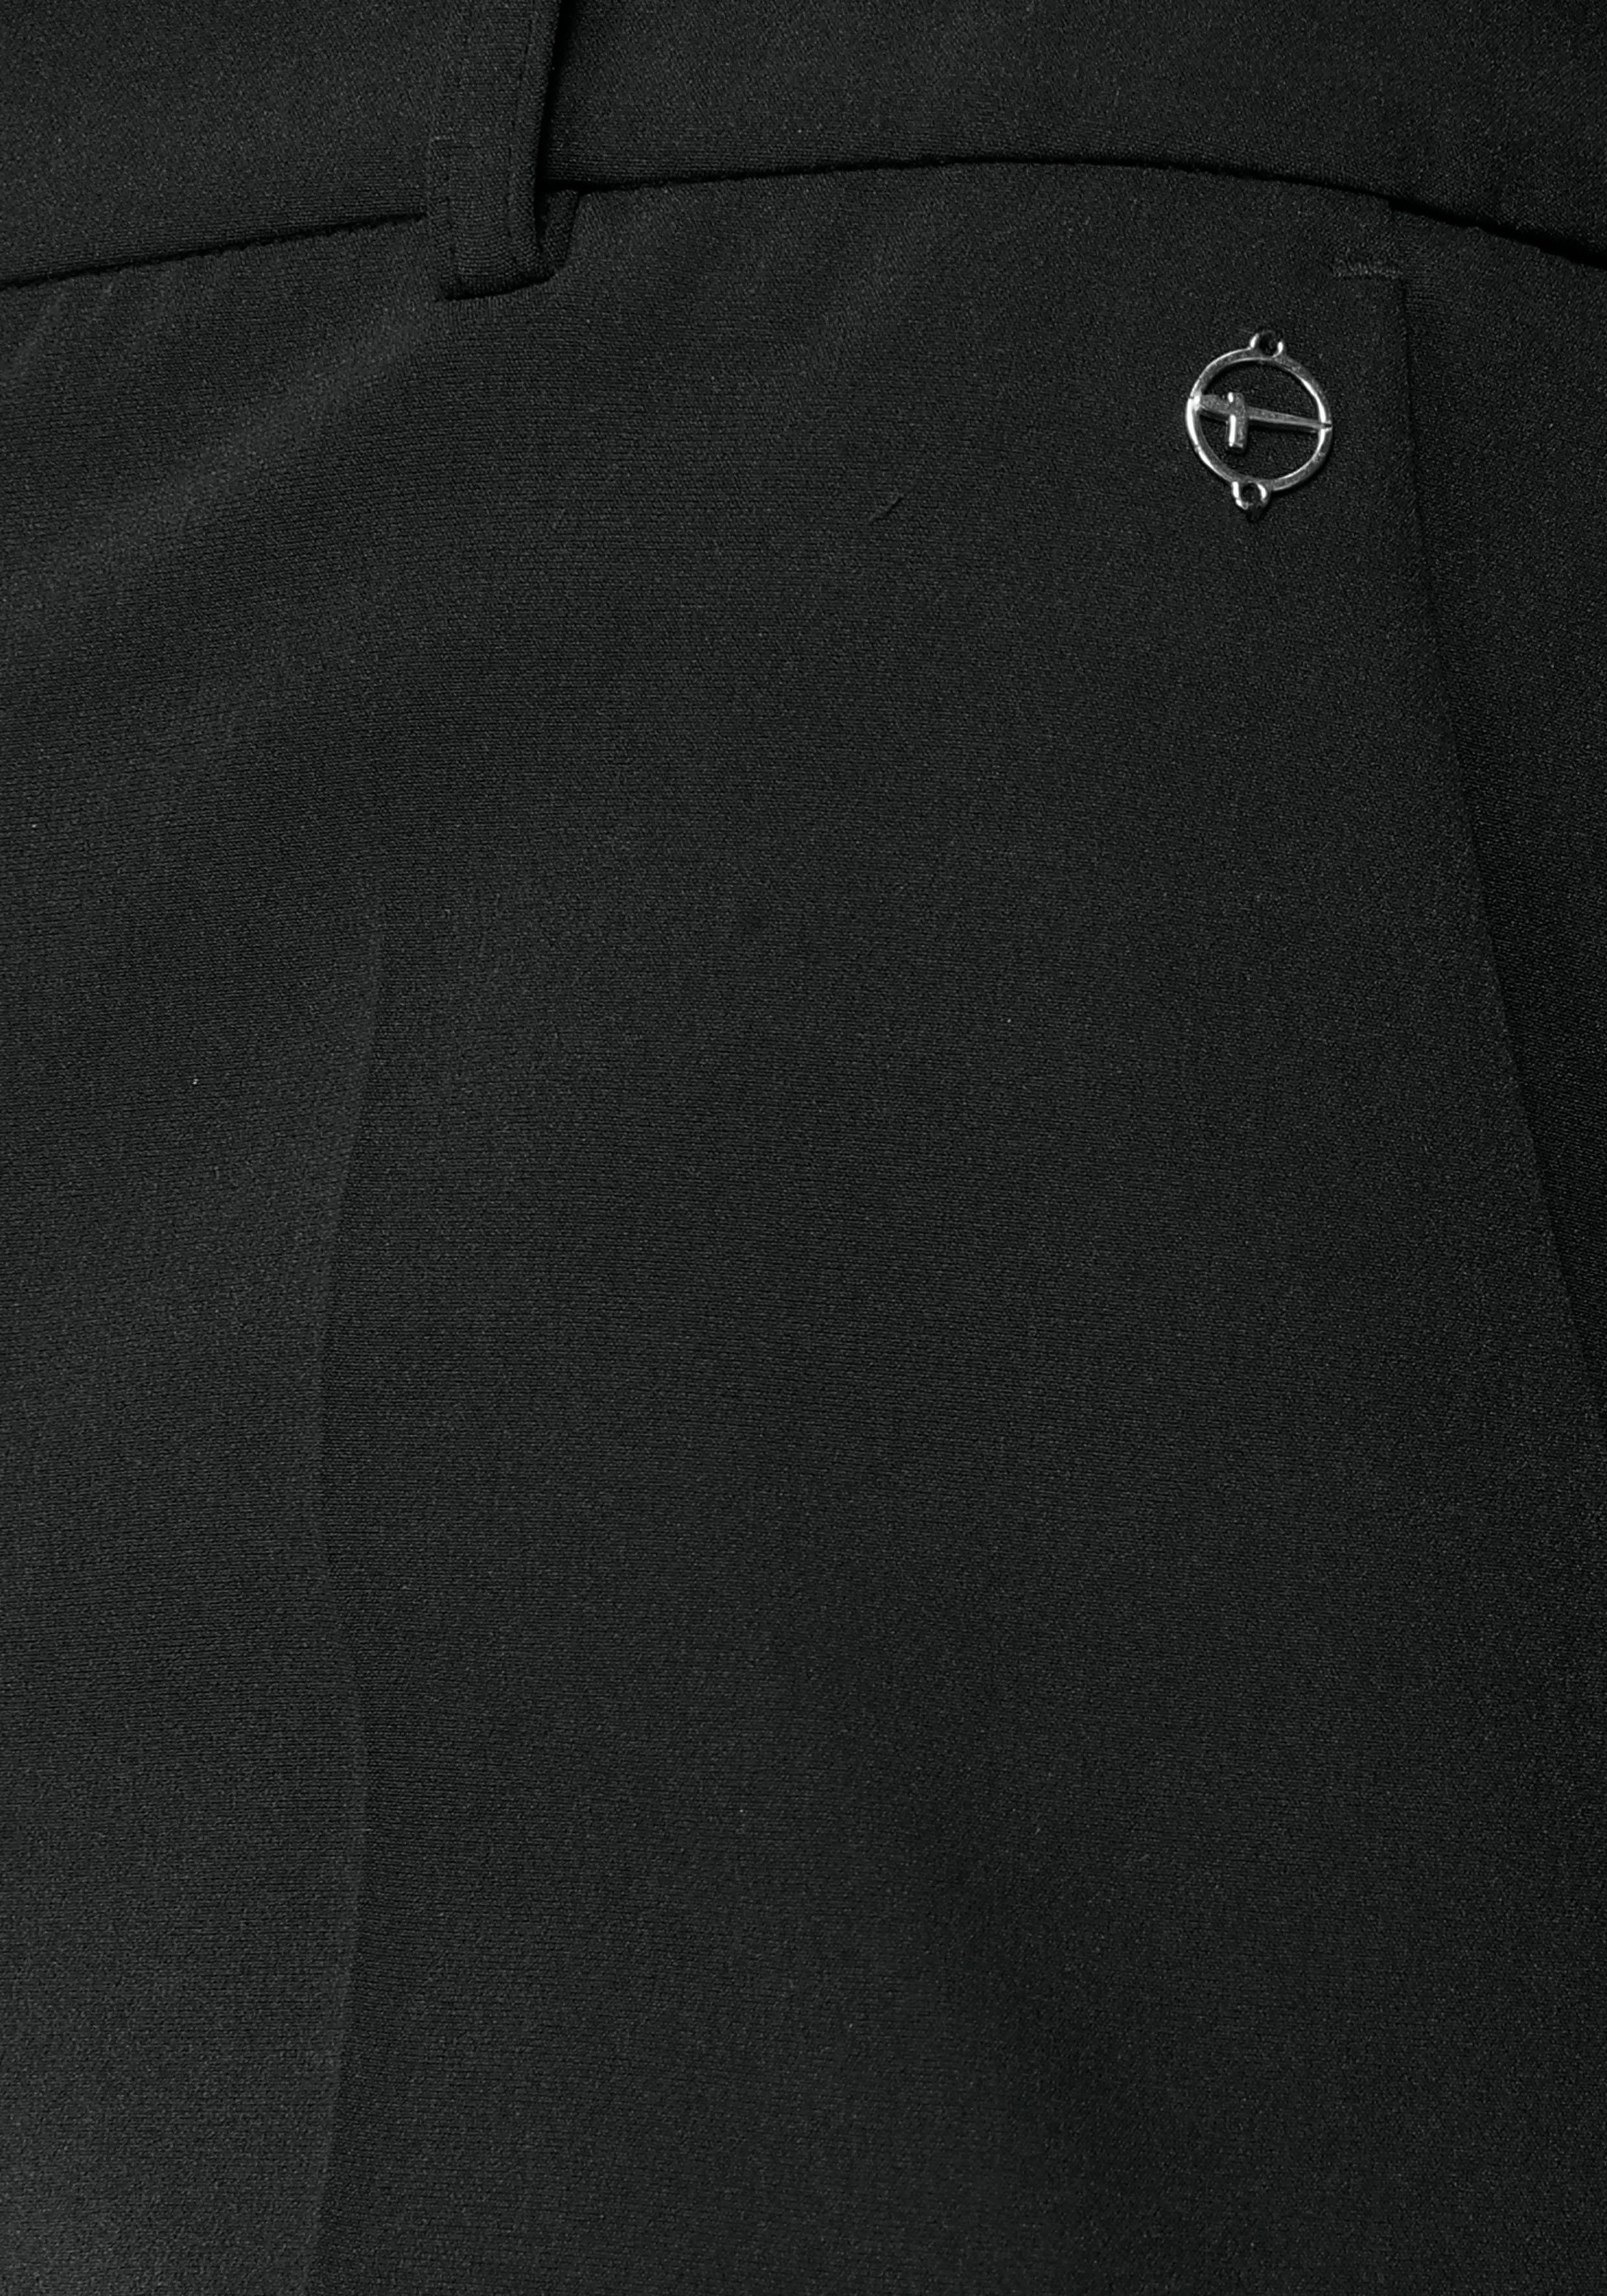 Tamaris Anzughose in Trendfarben schwarz ( aus nachhaltigem Hose Material)